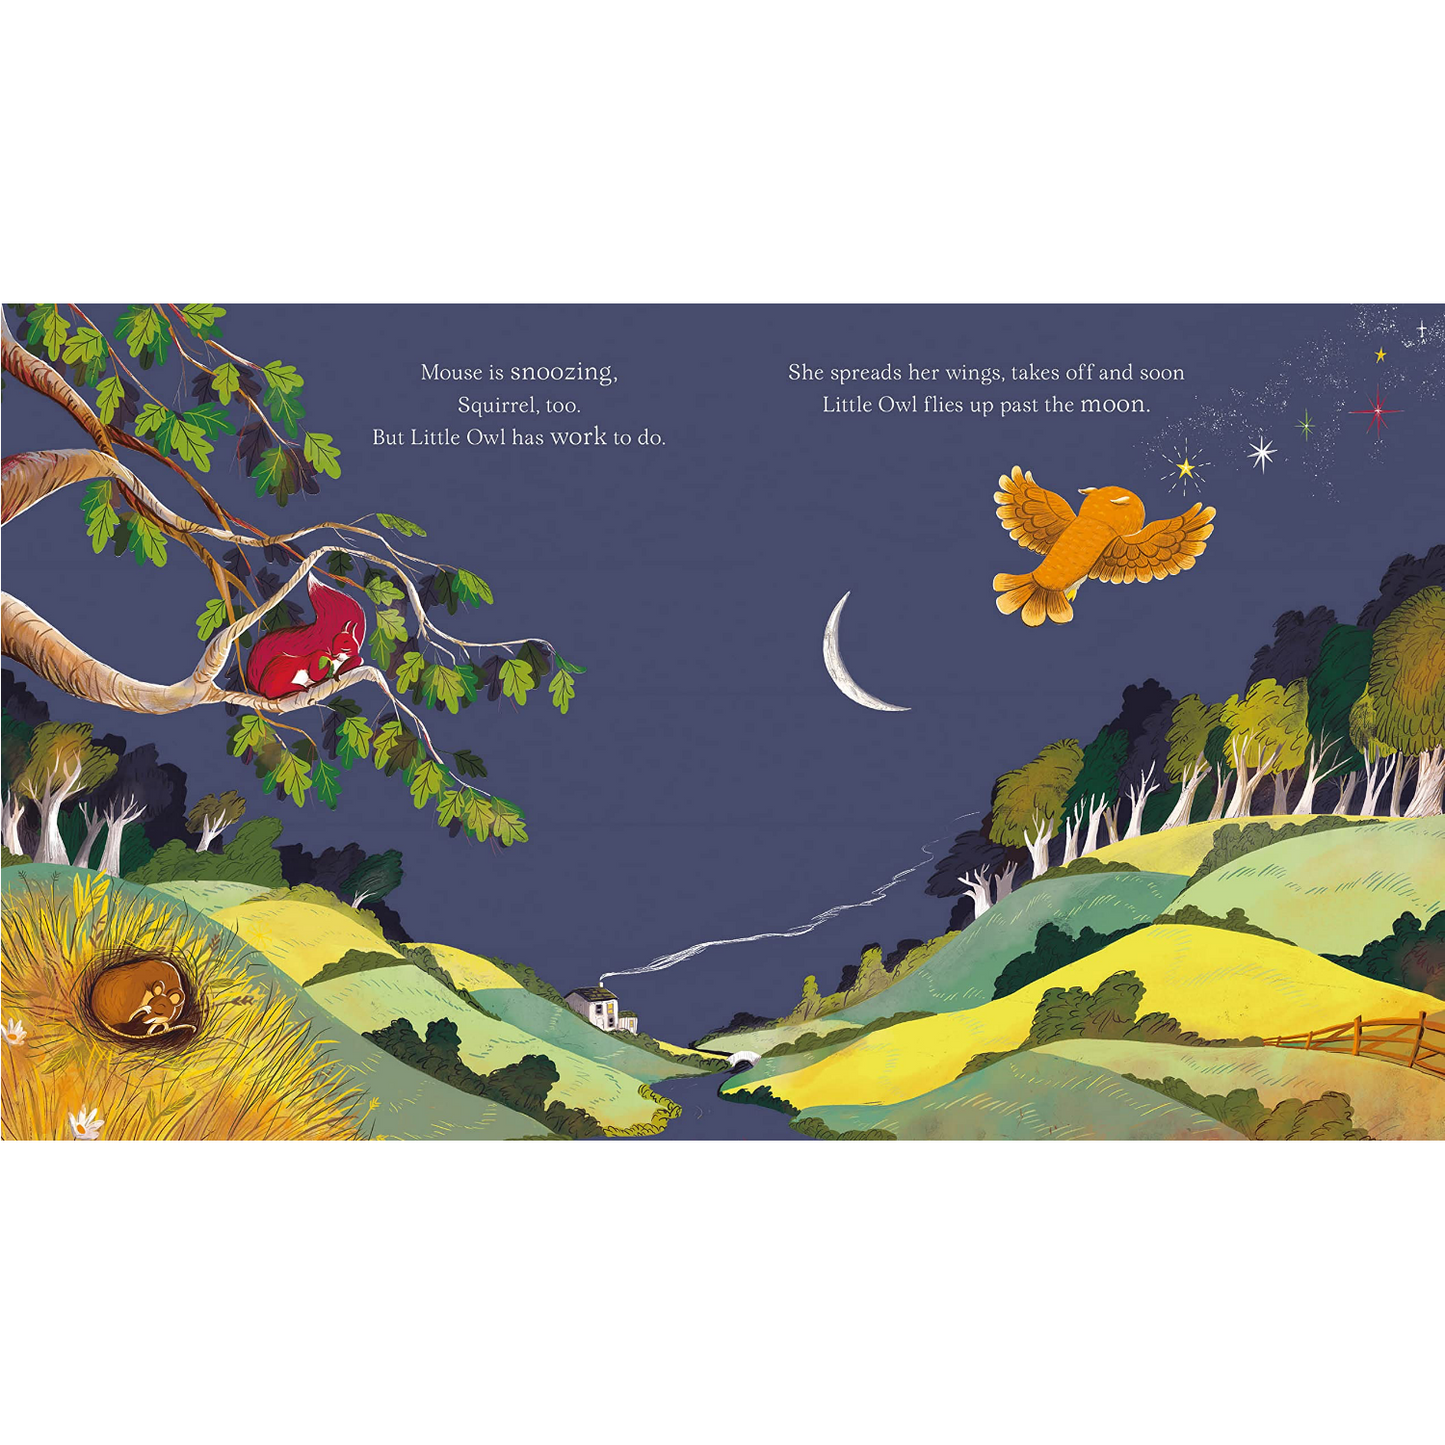 Little Owl's Bedtime | Children’s Book on Animals